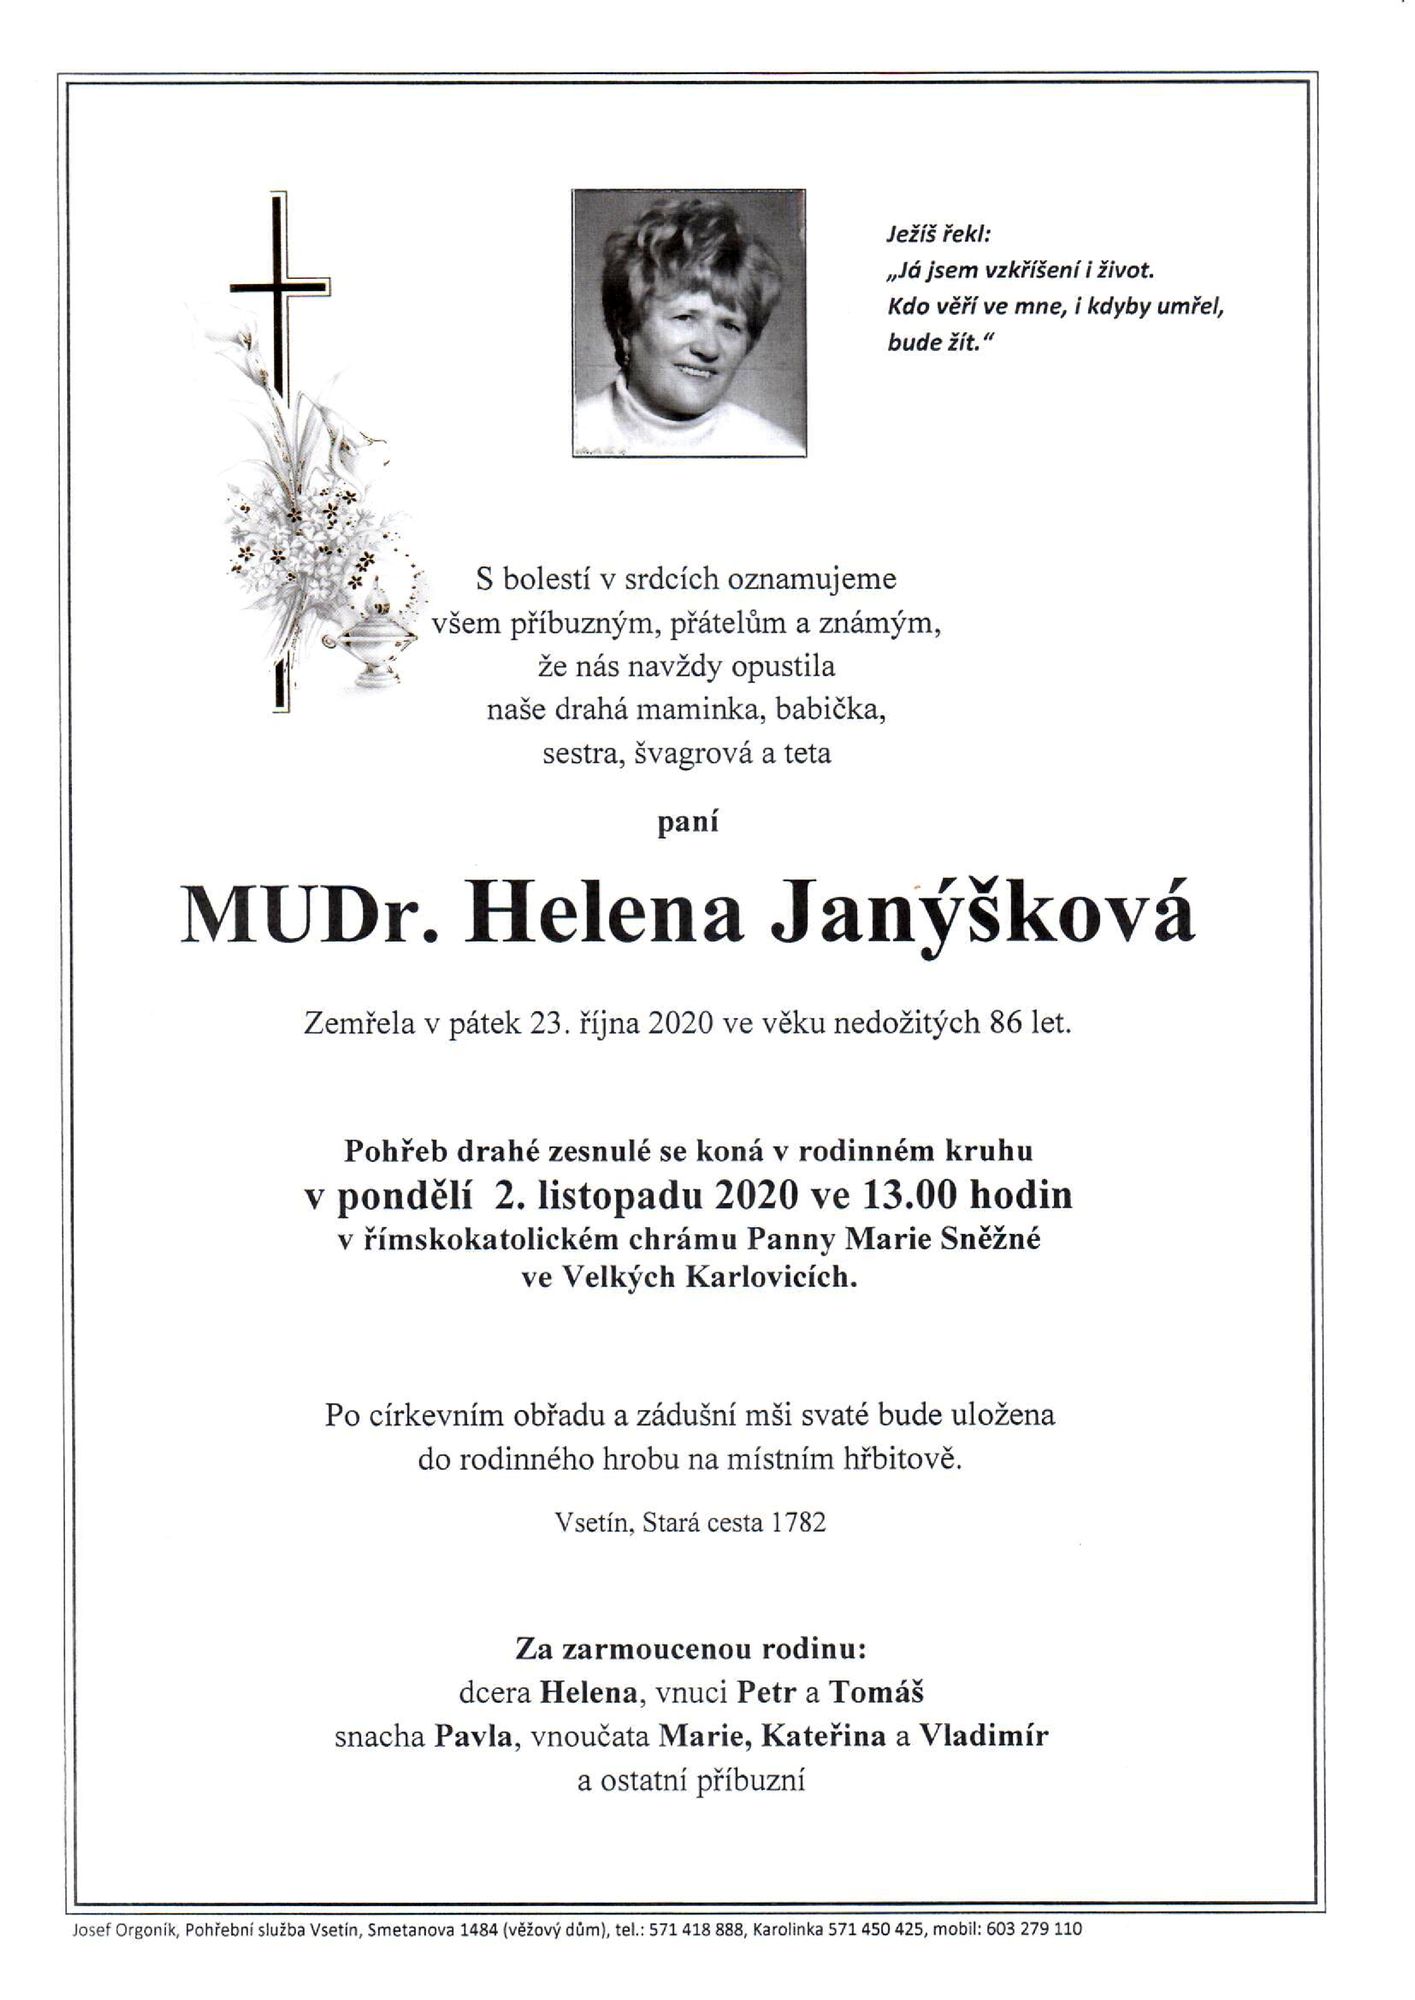 MUDr. Helena Janýšková